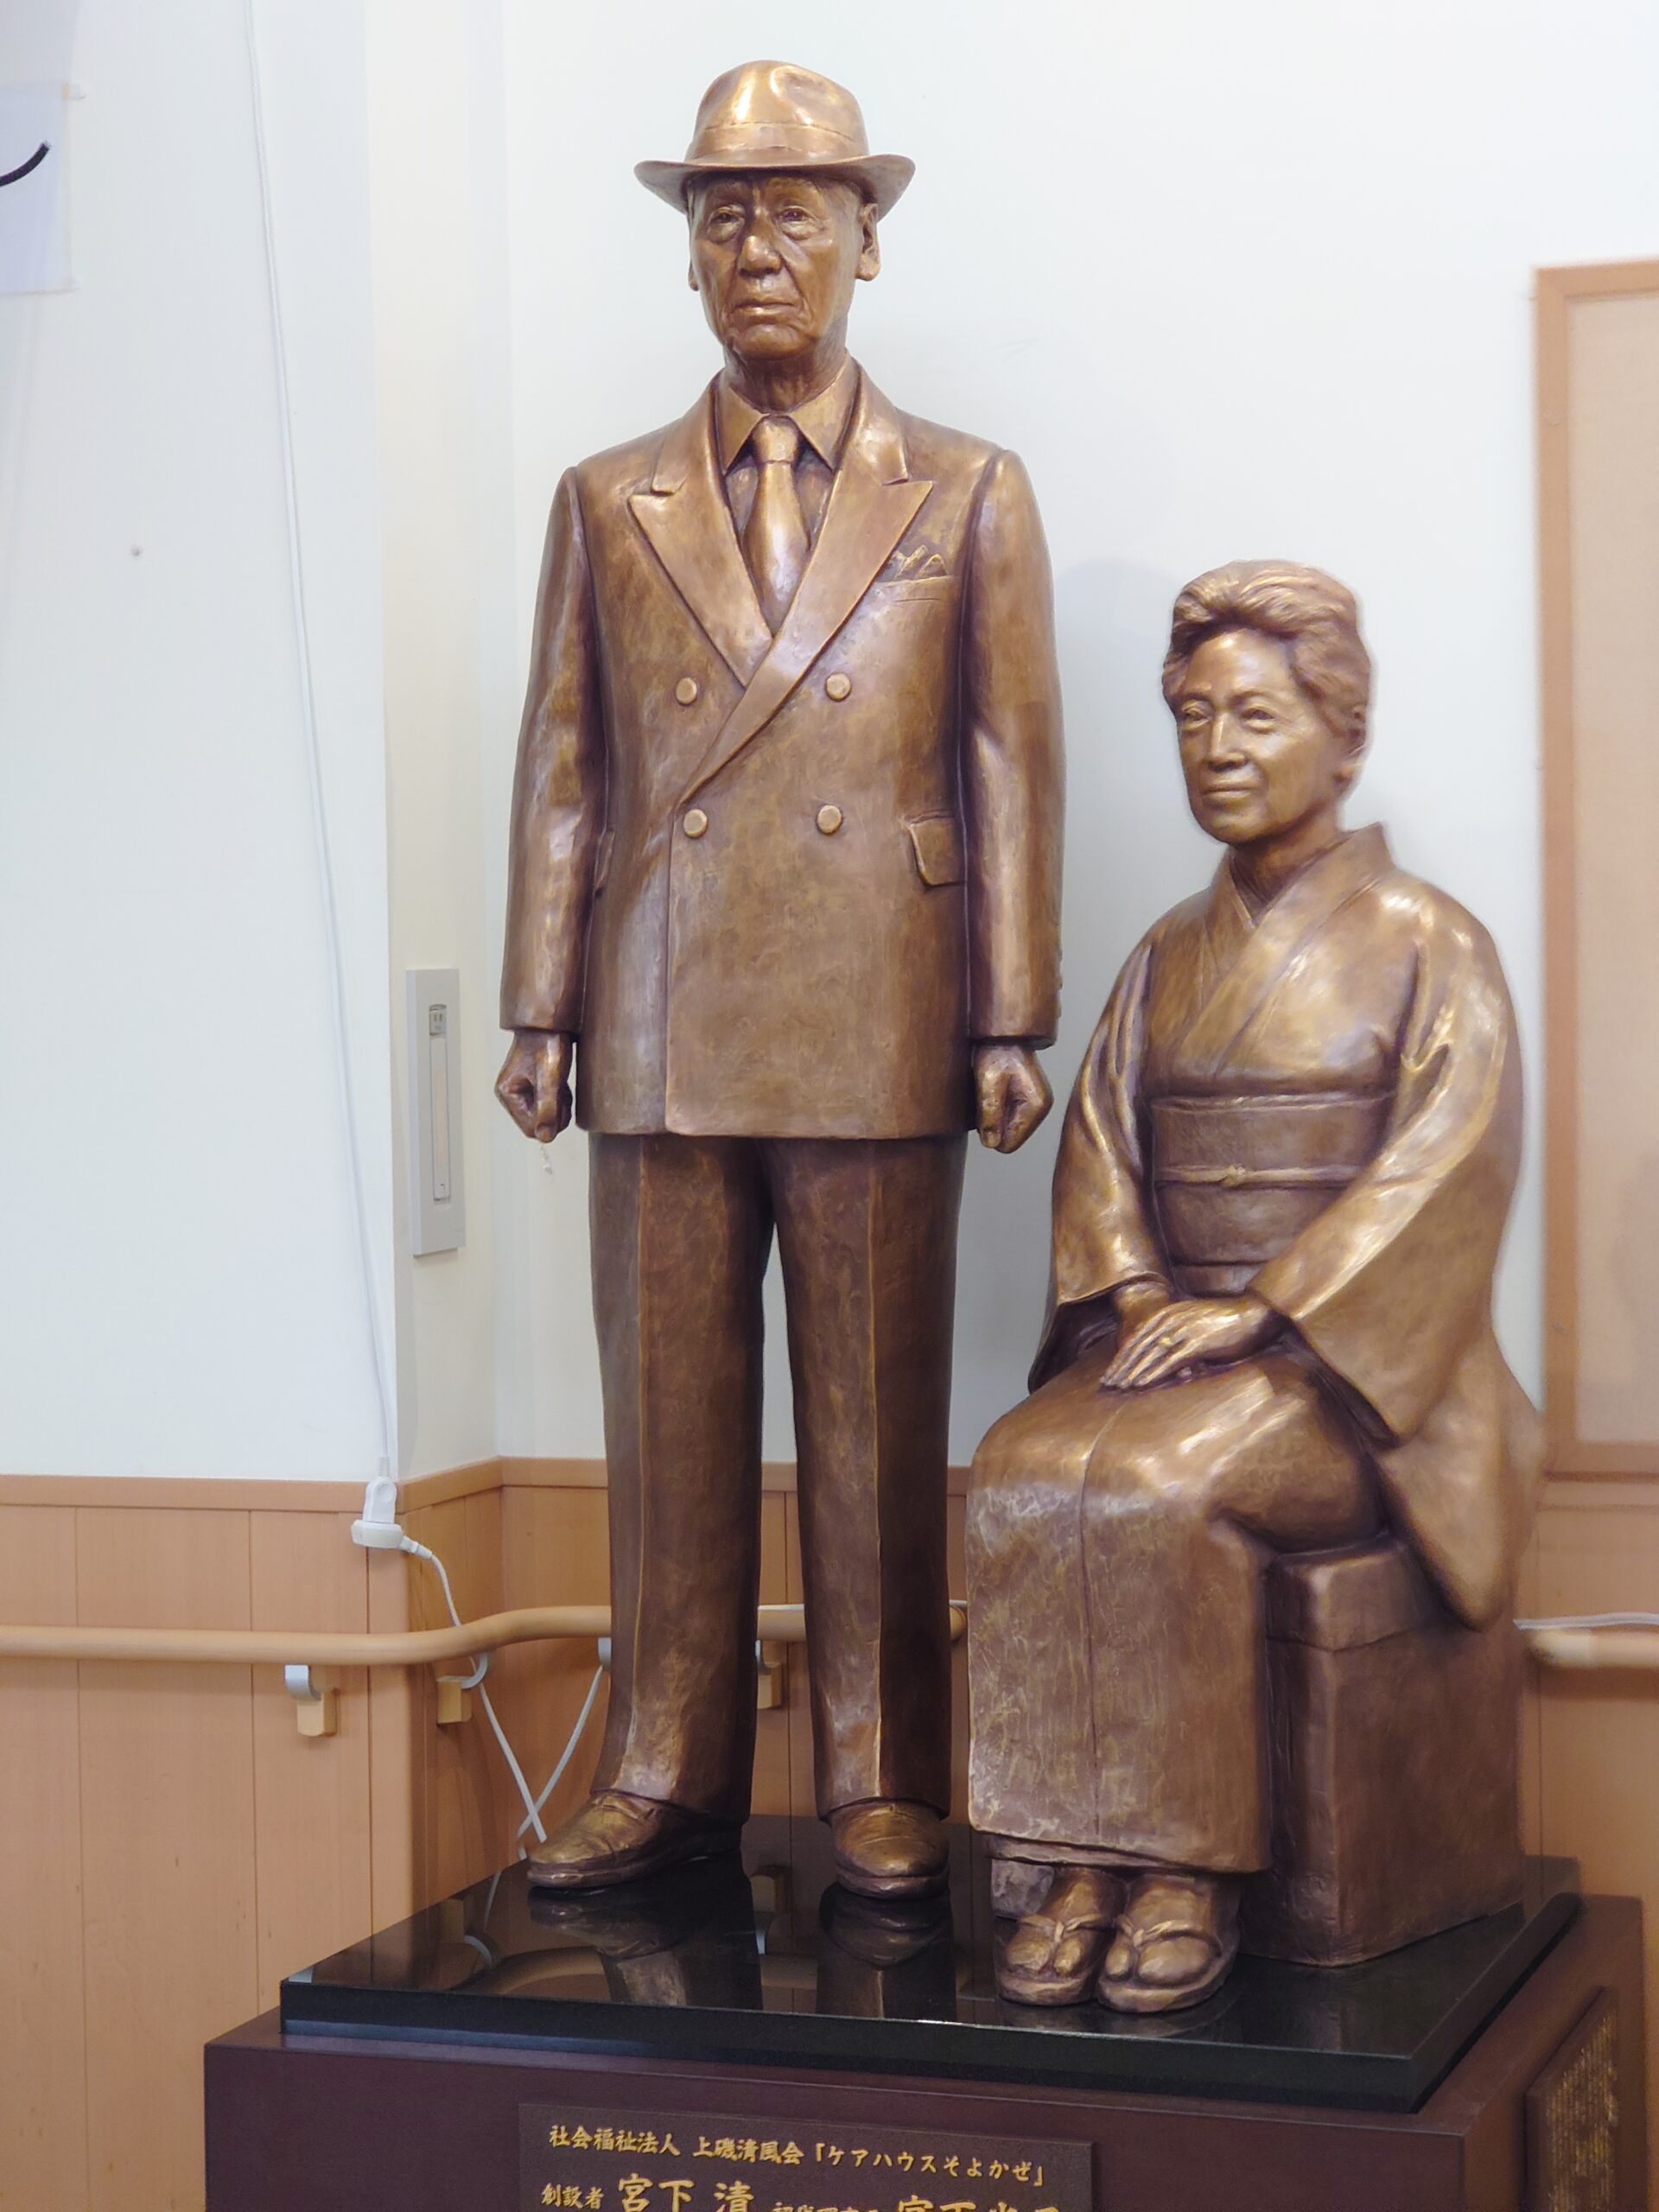 銅像制作／「ケアハウスそよかぜ」開設20年を記念して創設者宮下清、光子夫婦銅像を建立【北海道北斗市】